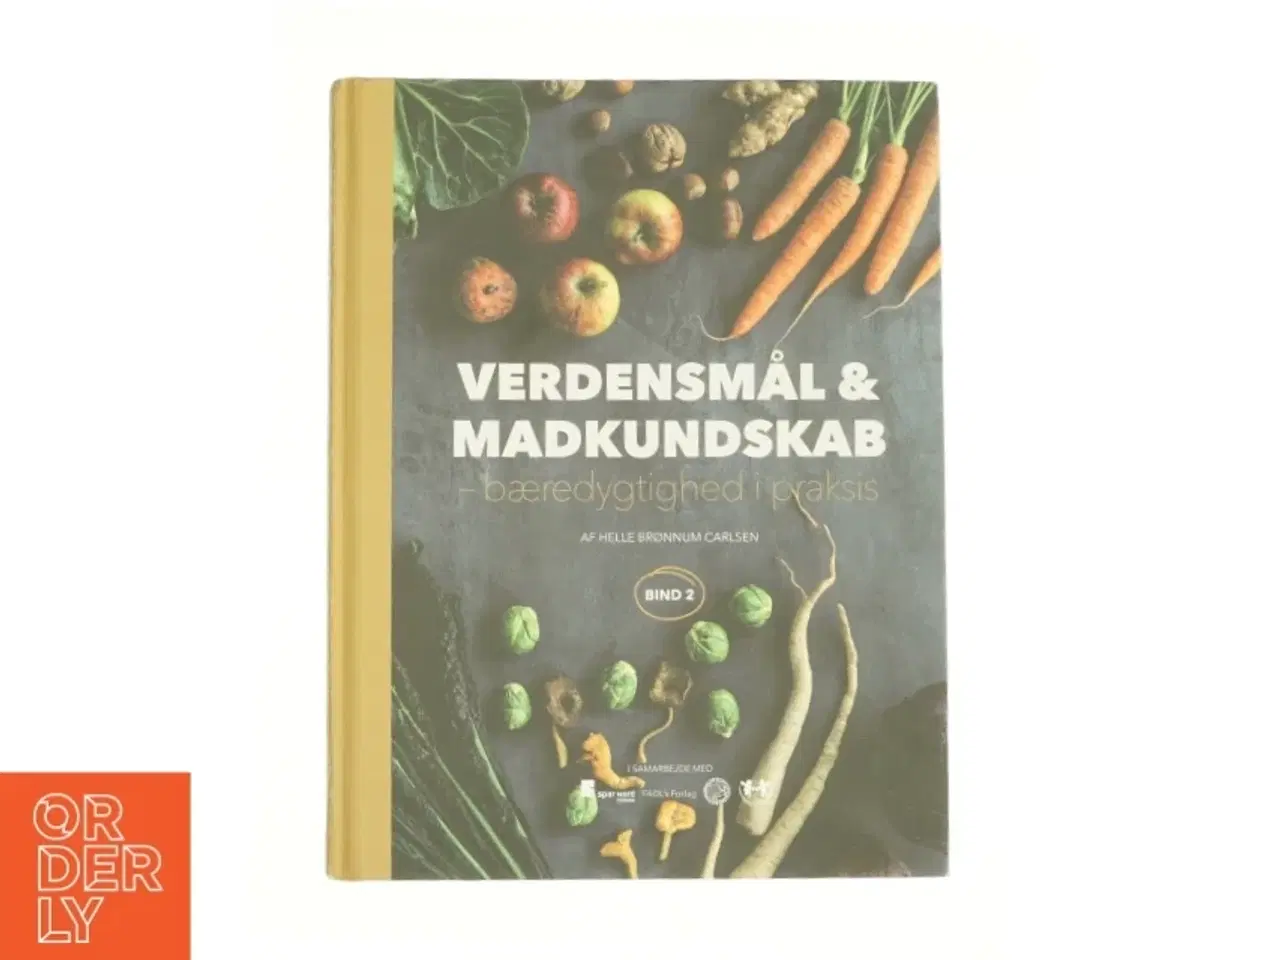 Billede 1 - Verdensmål og madkundskab - bind 2 : Bæredygtighed i praksis af Helle Brønnum Carlsen (Bog)